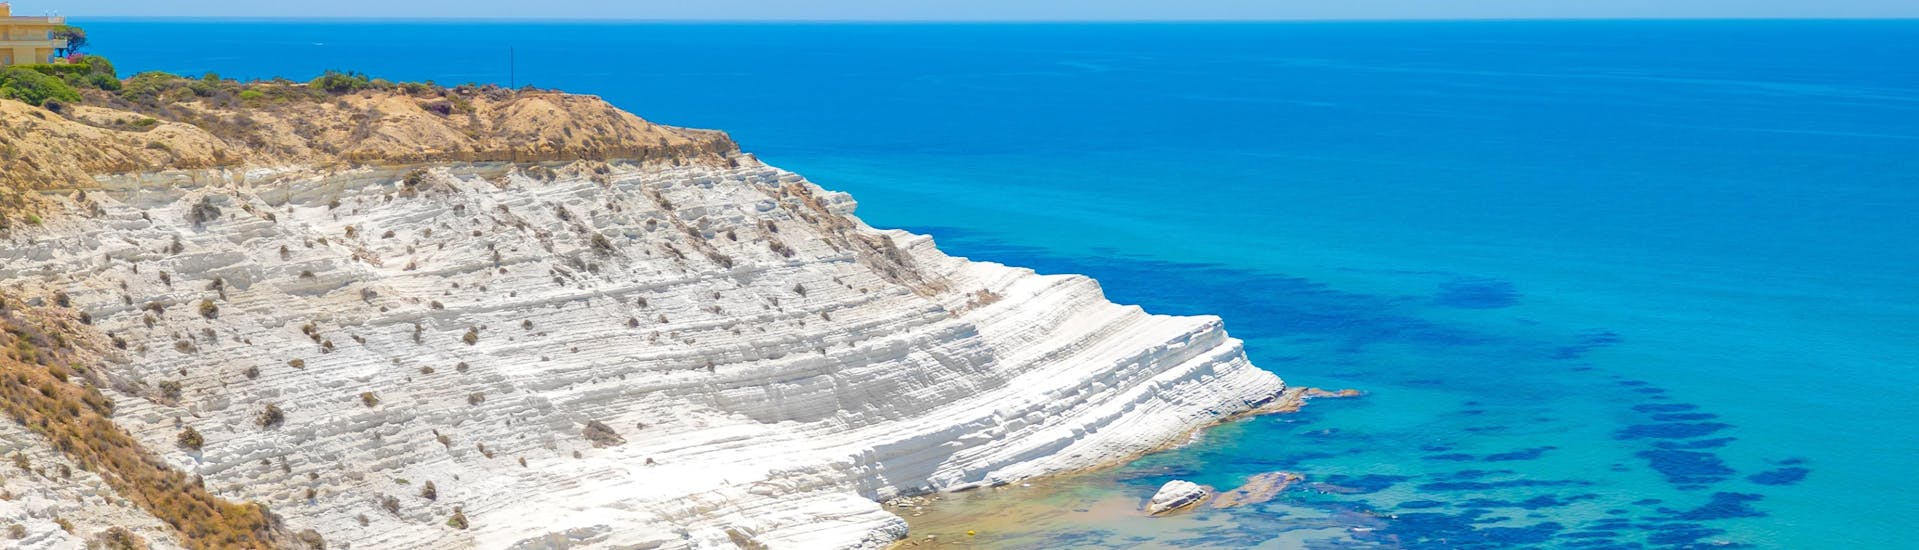 Een van de mooiste en beroemdste stranden van Agrigento op Sicilië.